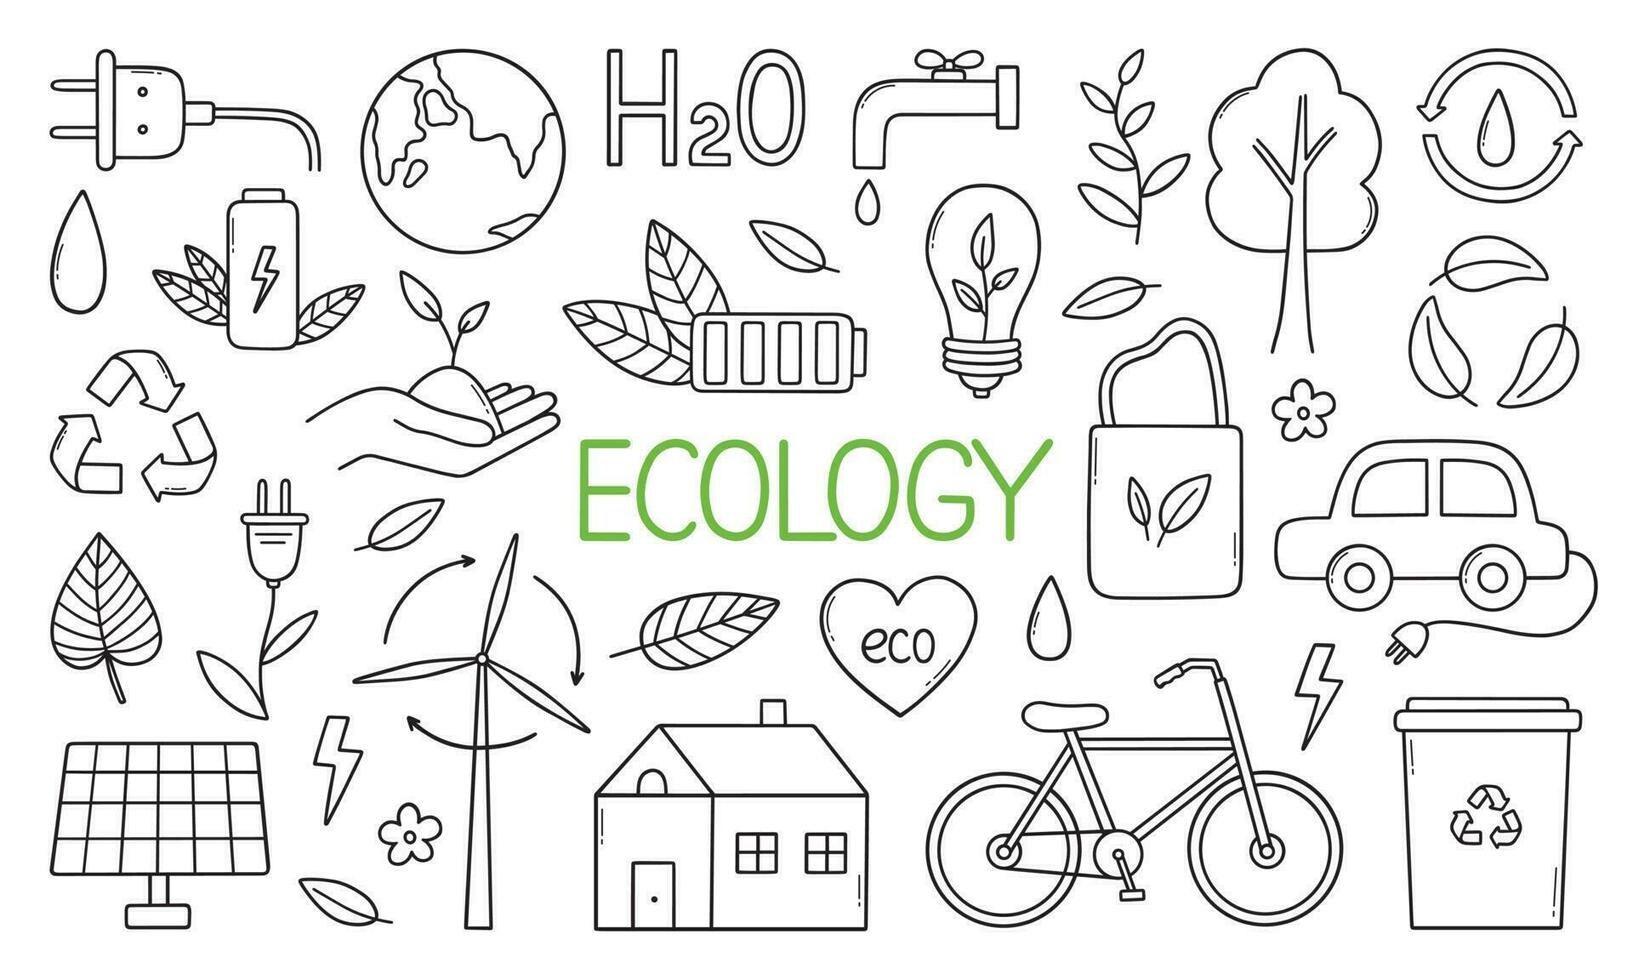 ecologia rabisco definir. verde energia, natureza proteção, zero desperdício, eco amigáveis conceito. vetor ilustração isolado em branco fundo.